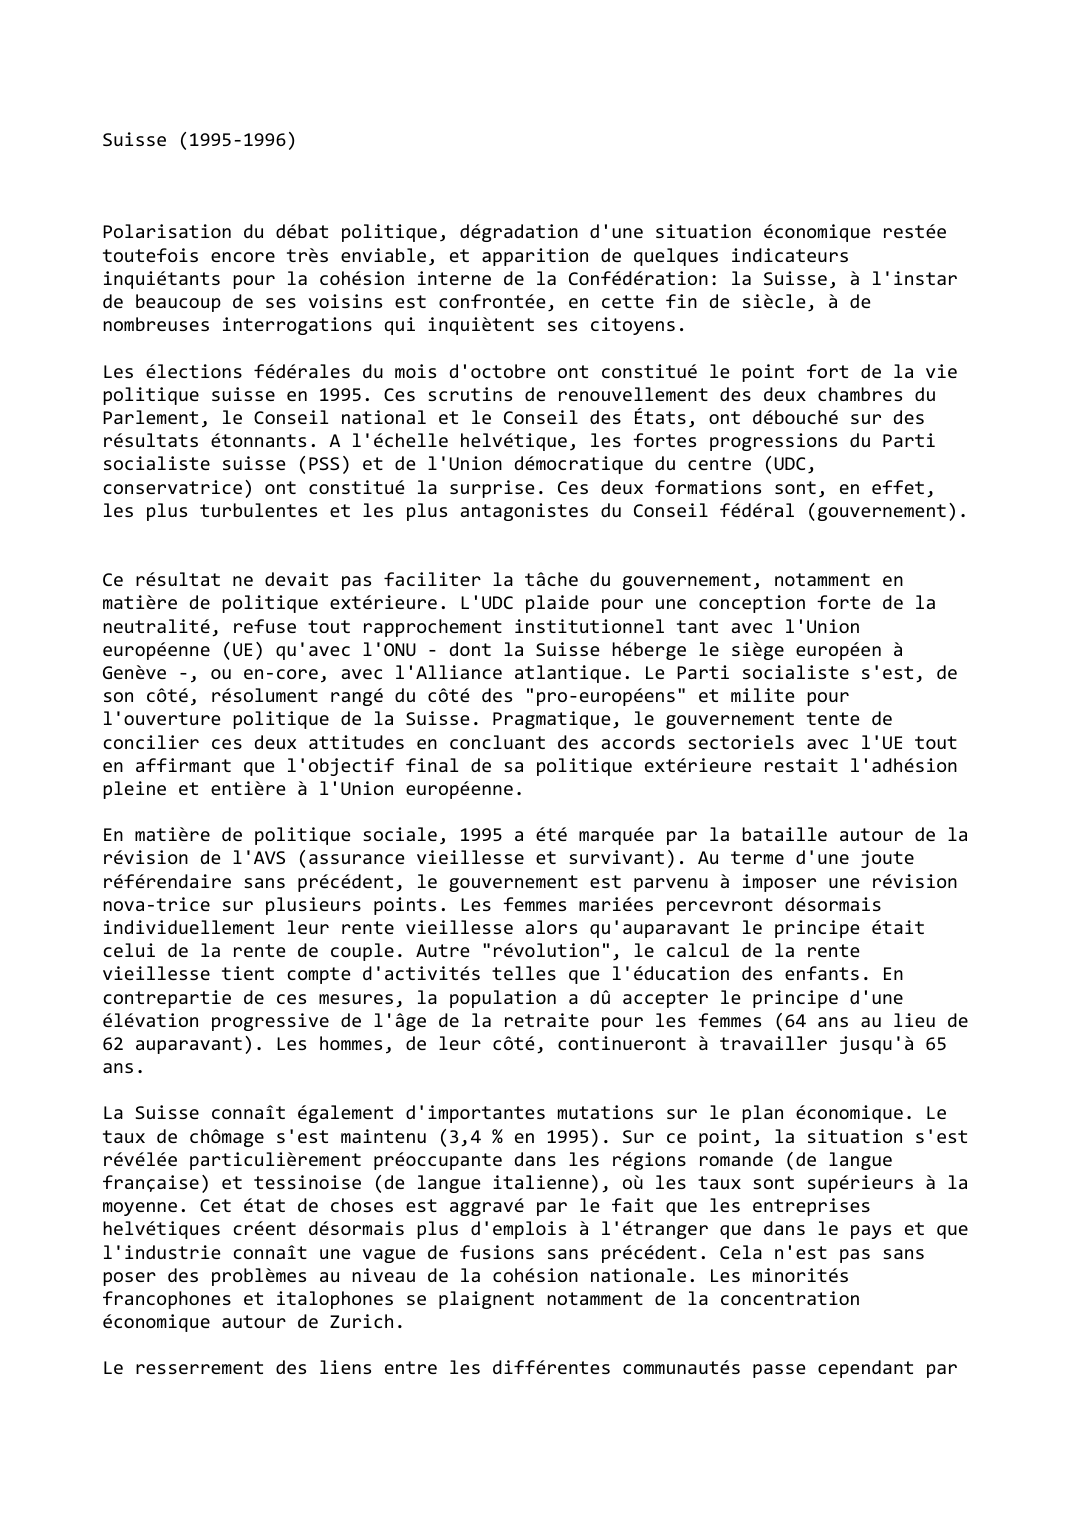 Prévisualisation du document Suisse (1995-1996)